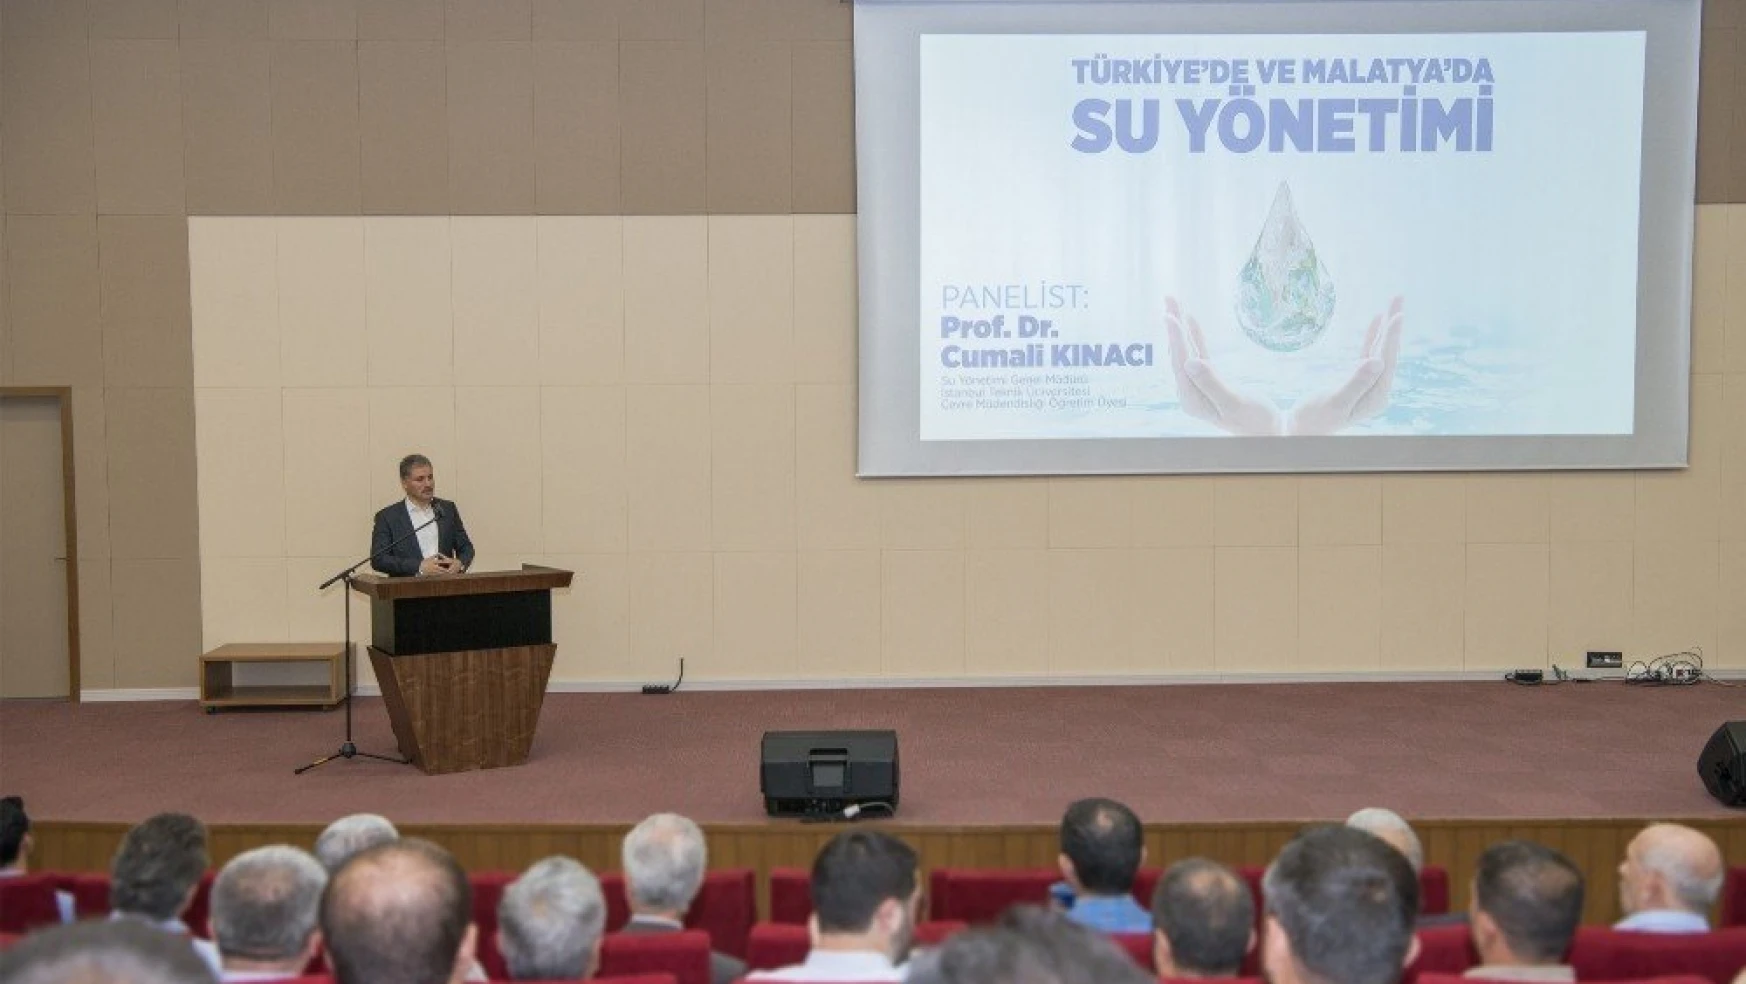 Türkiye'de ve Malatya'da Su Yönetimi paneli düzenledi
